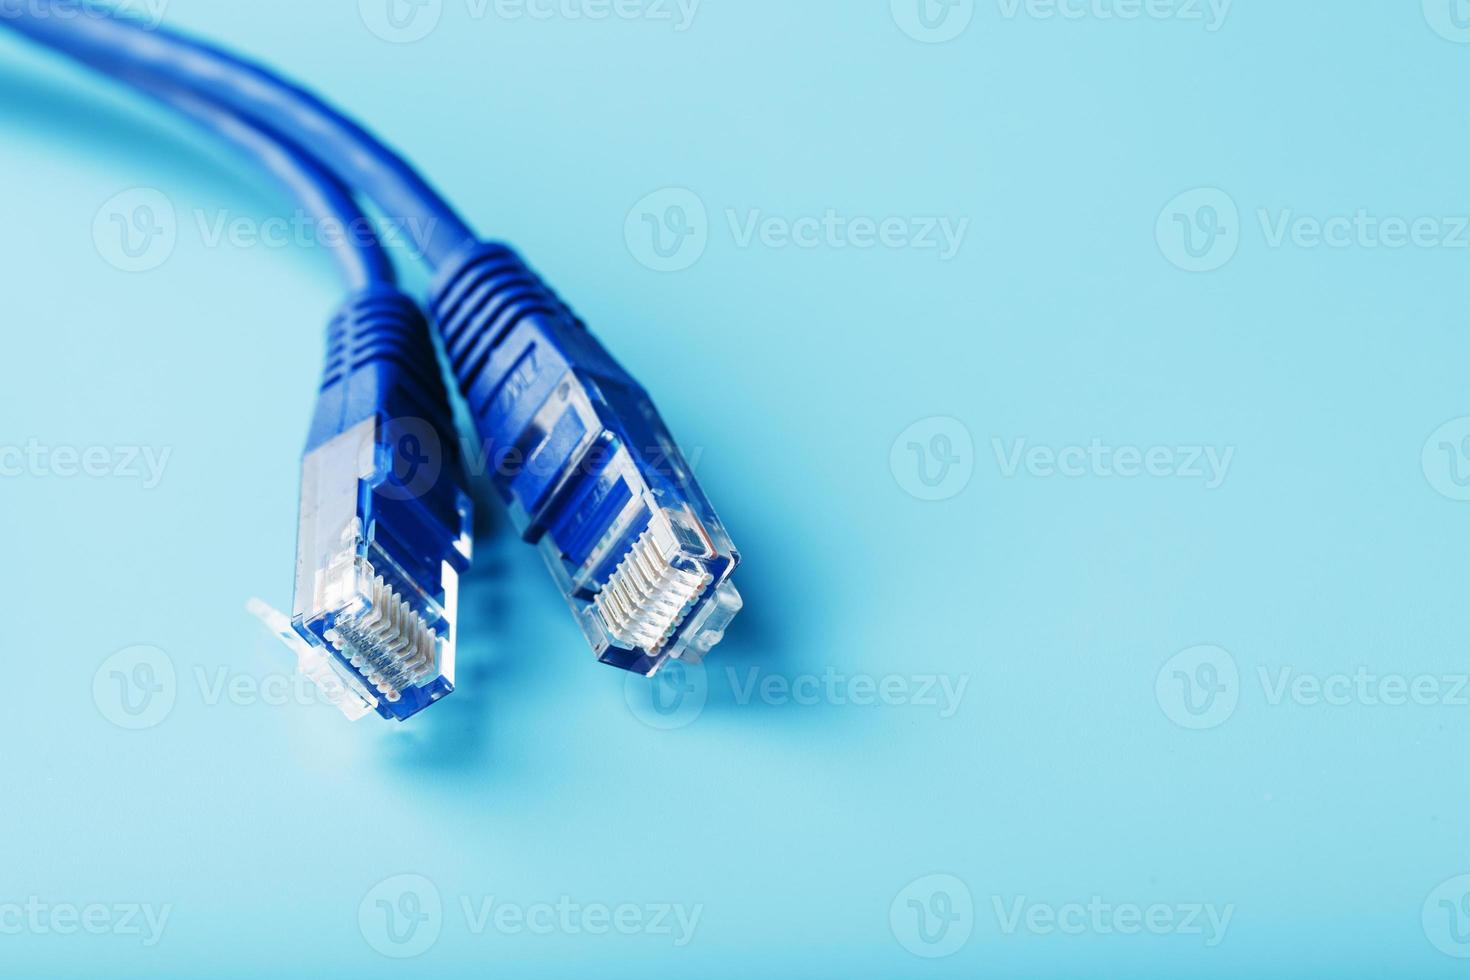 close-up do cabo de remendo do conector do cabo ethernet em um fundo azul com espaço livre foto